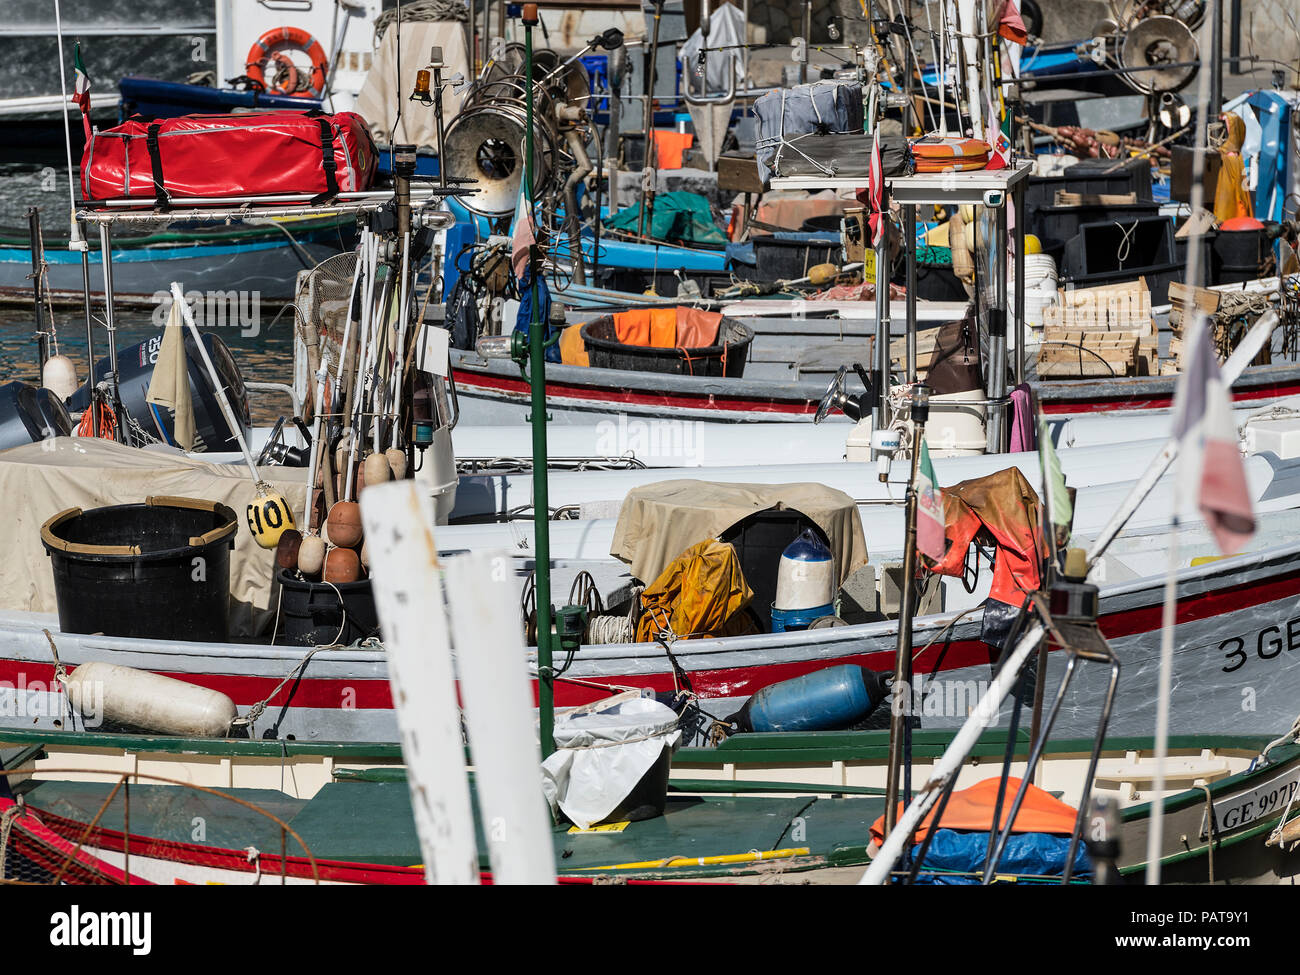 Rustico, la pesca barche ormeggiate in porto, Camogli, Liguria, Italia. Foto Stock